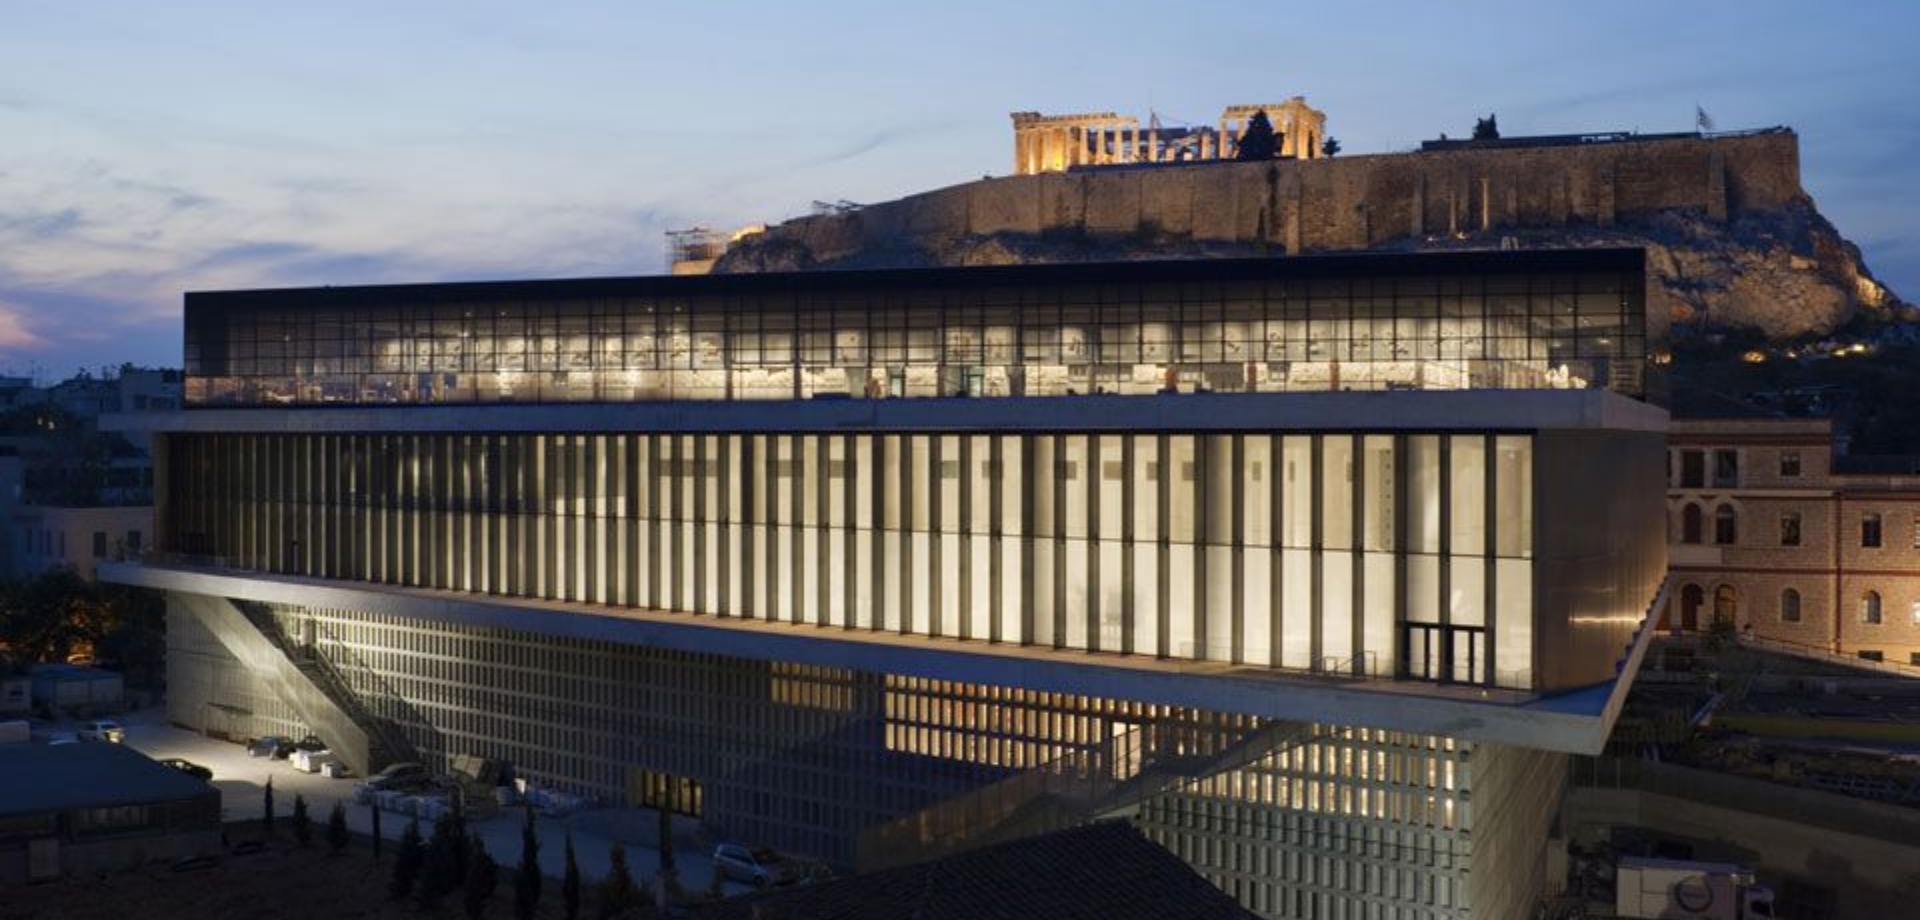 Μουσείο Ακρόπολης: Mια παλιά, ταραγμένη και ενδιαφέρουσα ιστορία